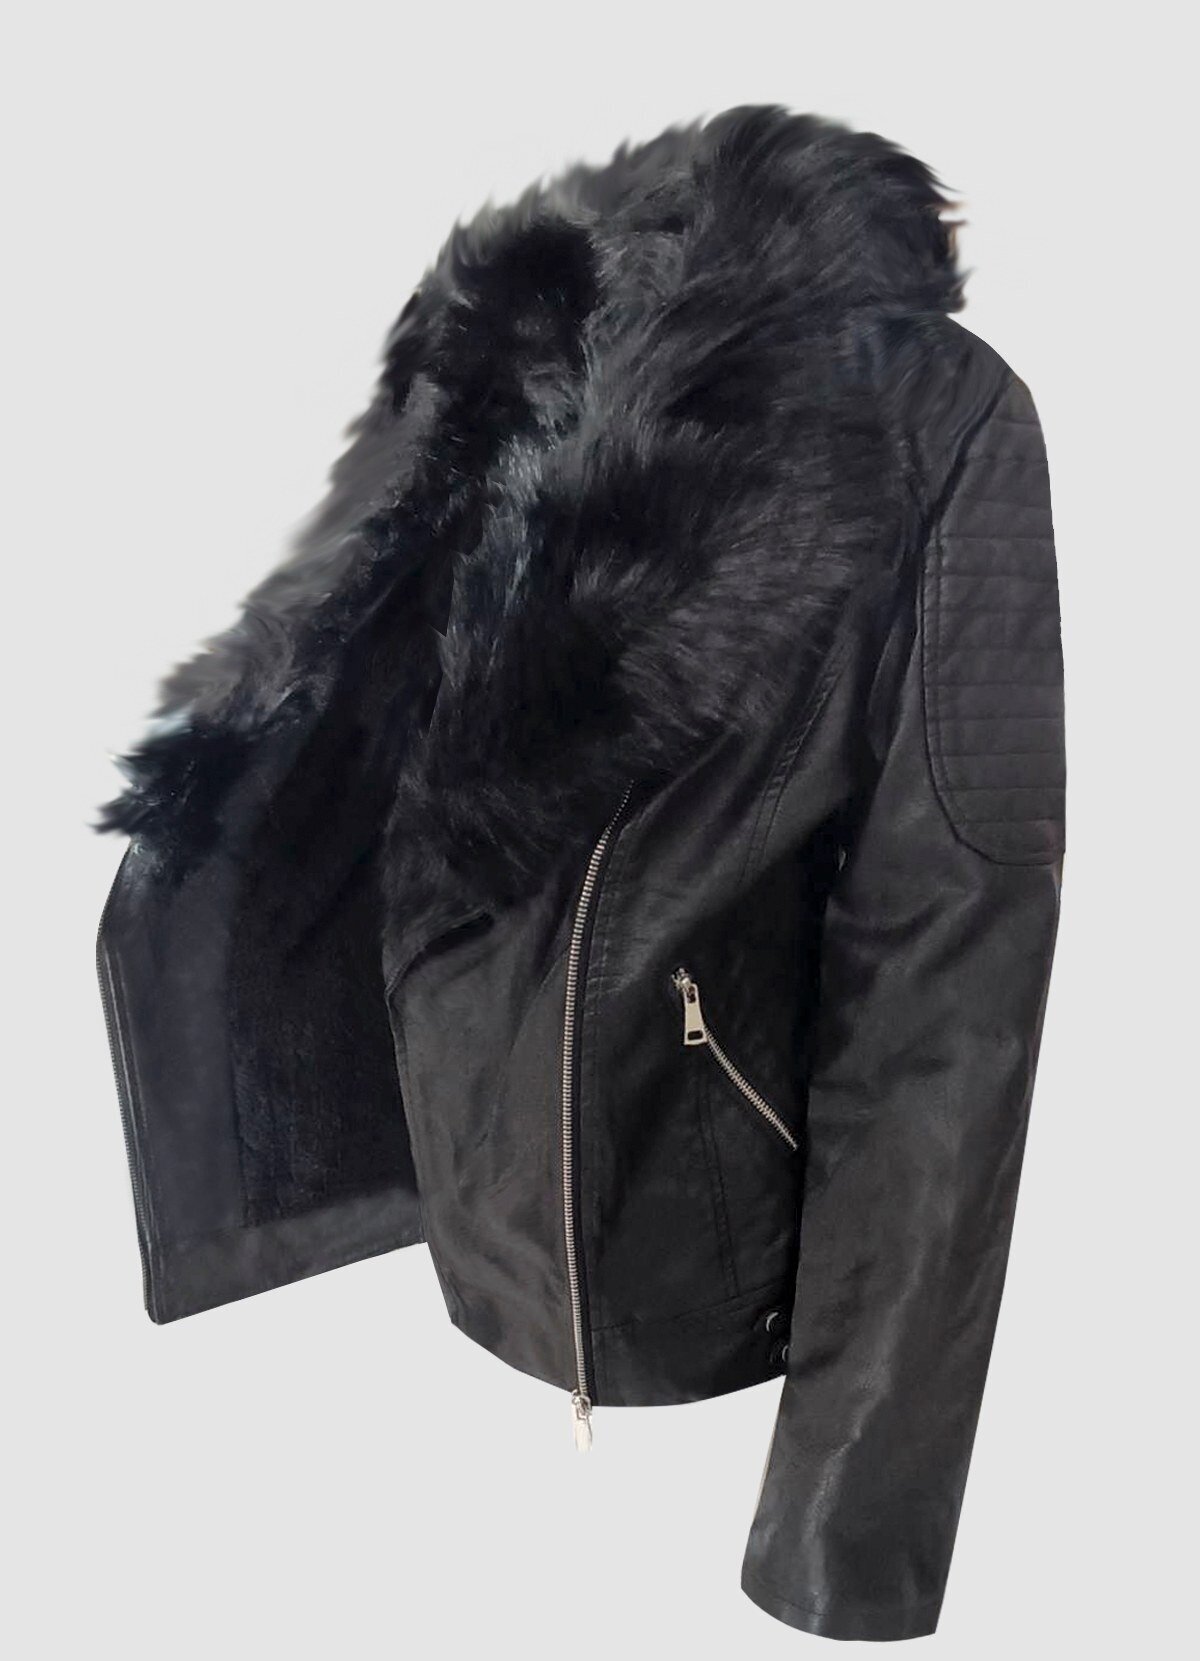 δερματίνη jacket με γούνα στο γιακά plus size F/W 2022/23 - Parizianista.gr